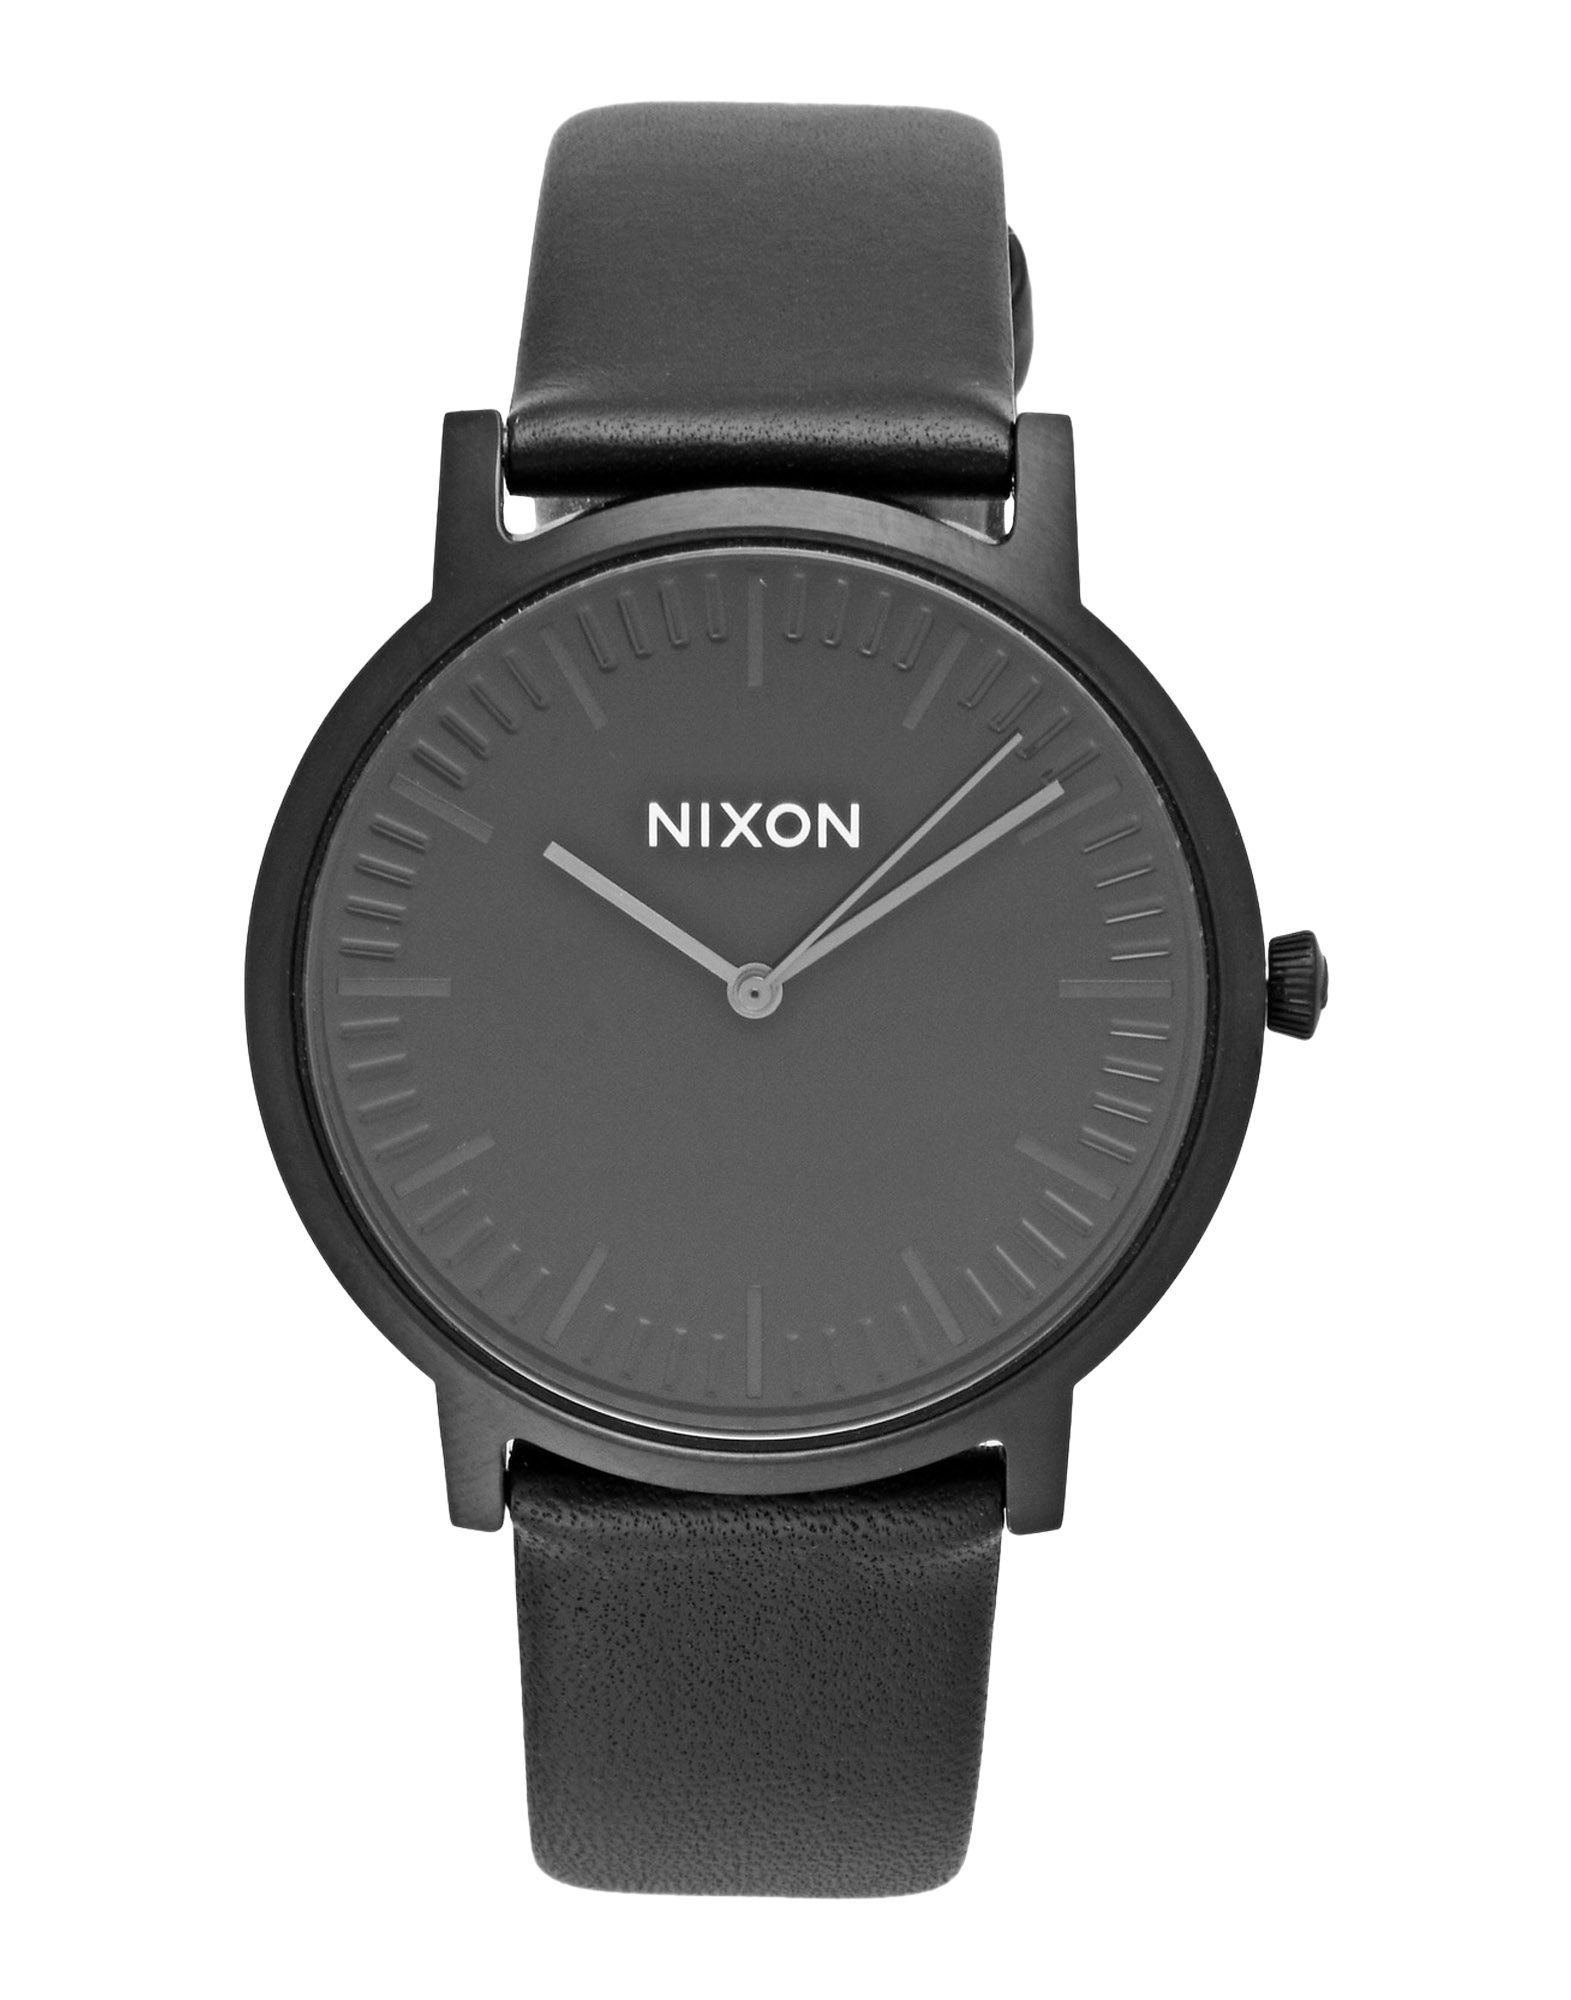 《送料無料》NIXON Unisex 腕時計 ブラック ステンレススチール / 革 A1058 PORTER LEATHER